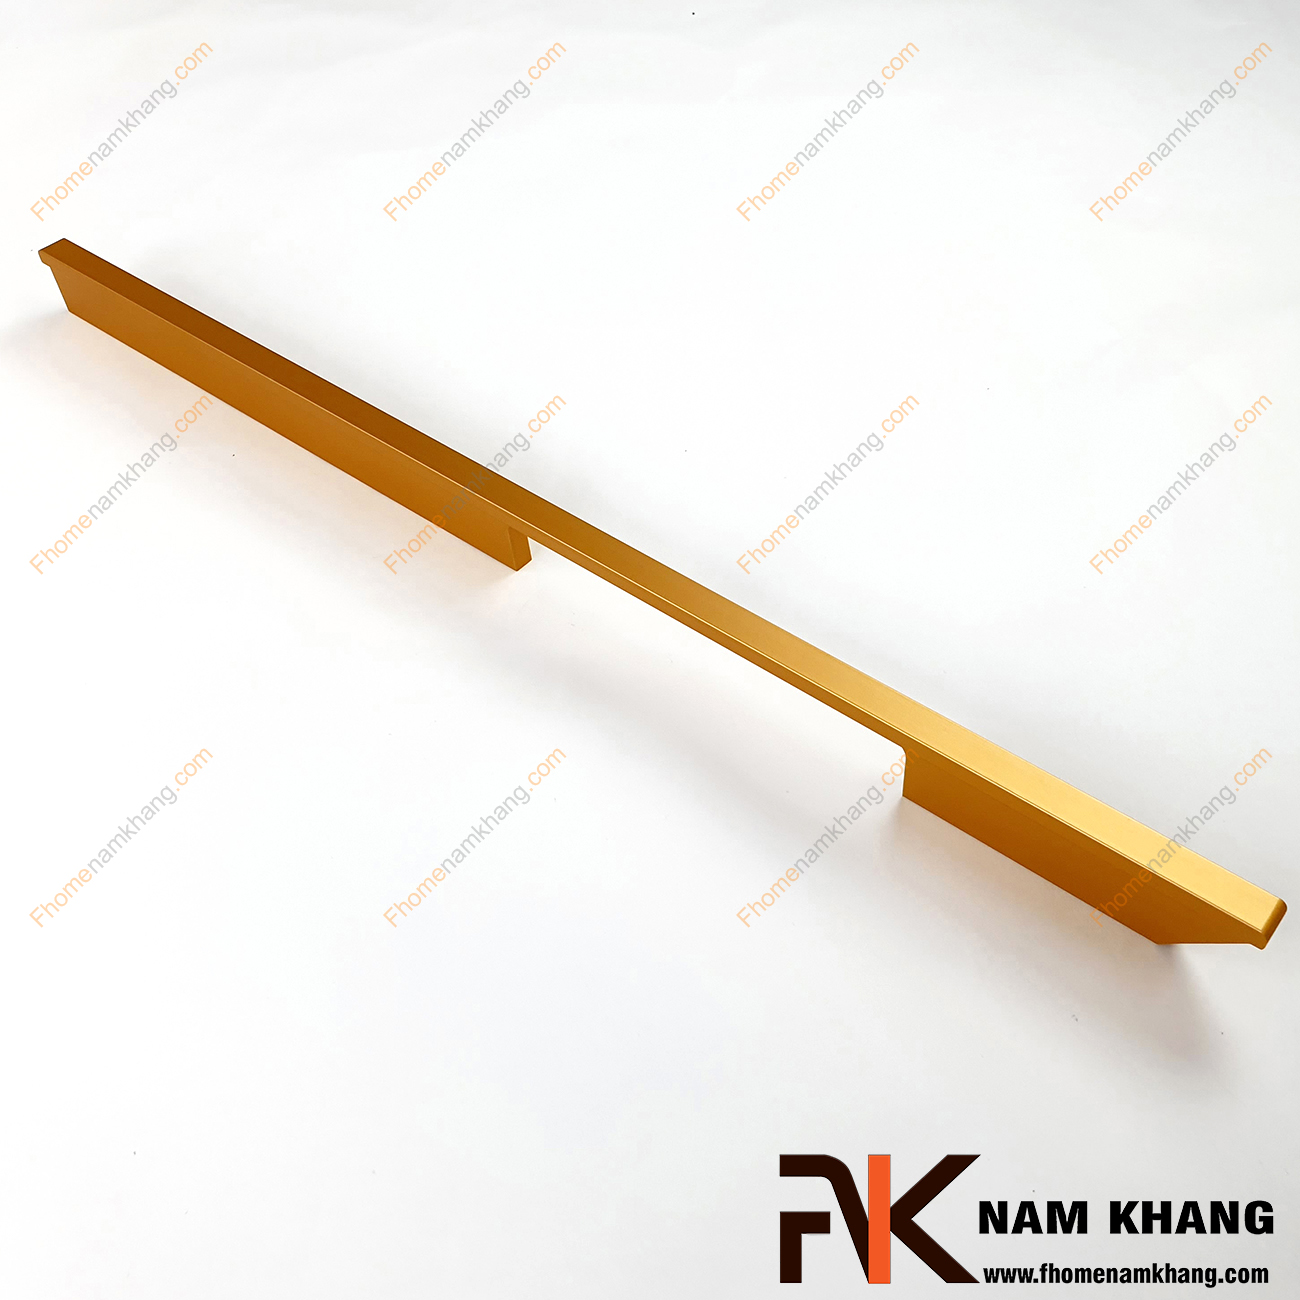 Sản phẩm Tay nắm tủ dạng thanh dài màu vàng NK156-V là loại tay nắm chuyên dùng cho các dạng tủ kệ có chiều dài lớn, đặc biệt là các dạng tủ quần áo